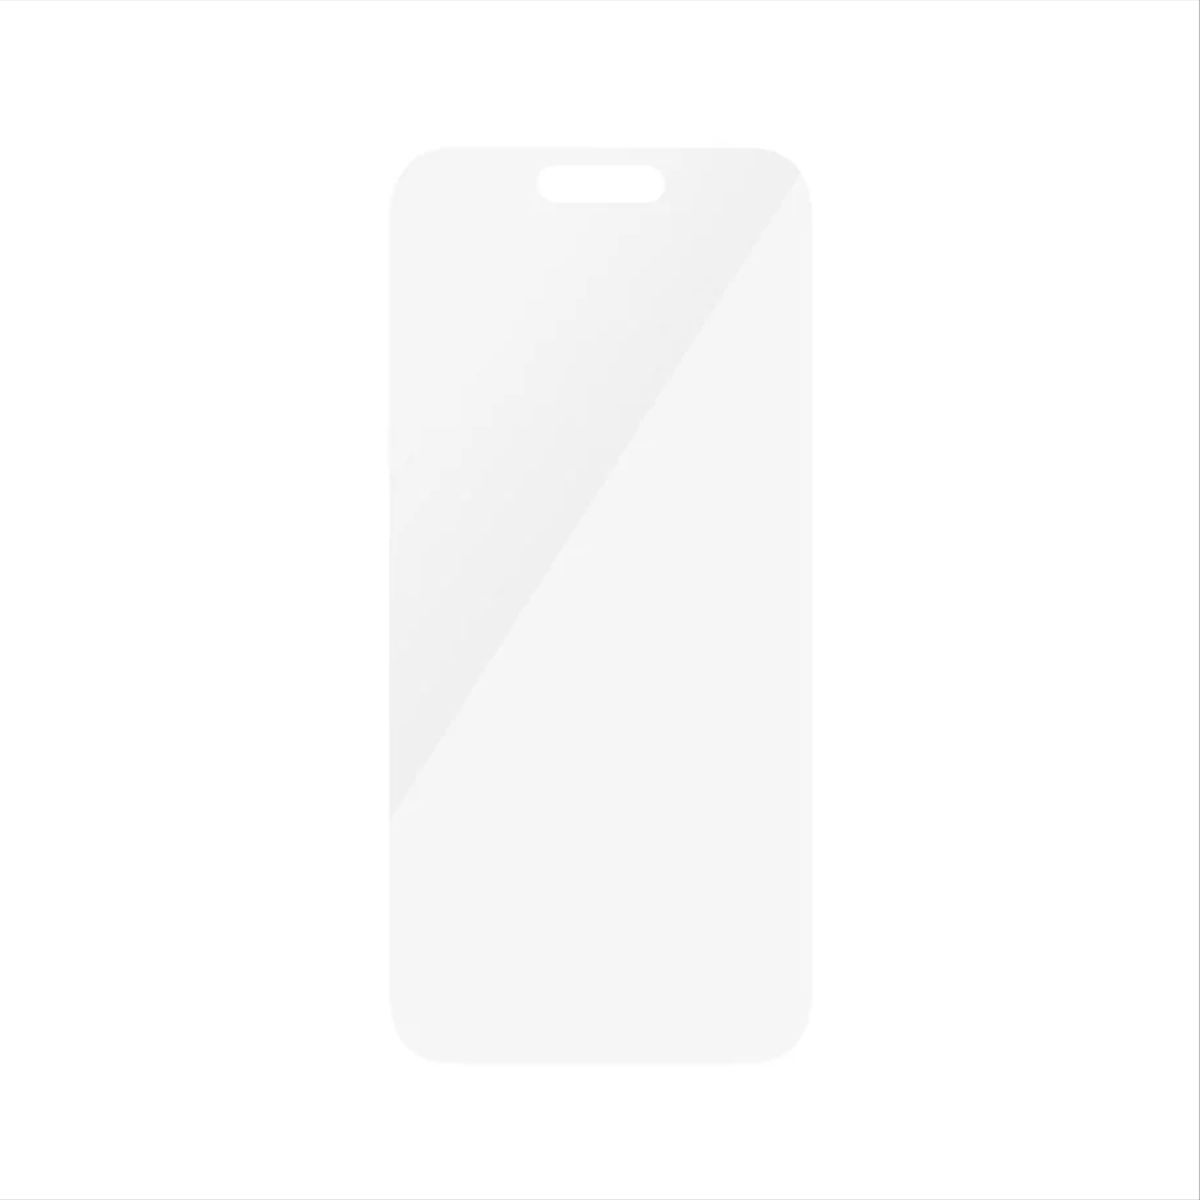 Max) 15 Display Hart iPhone Apple Glas Folie Schutzglas(für Pro PANZERGLASS Panzer